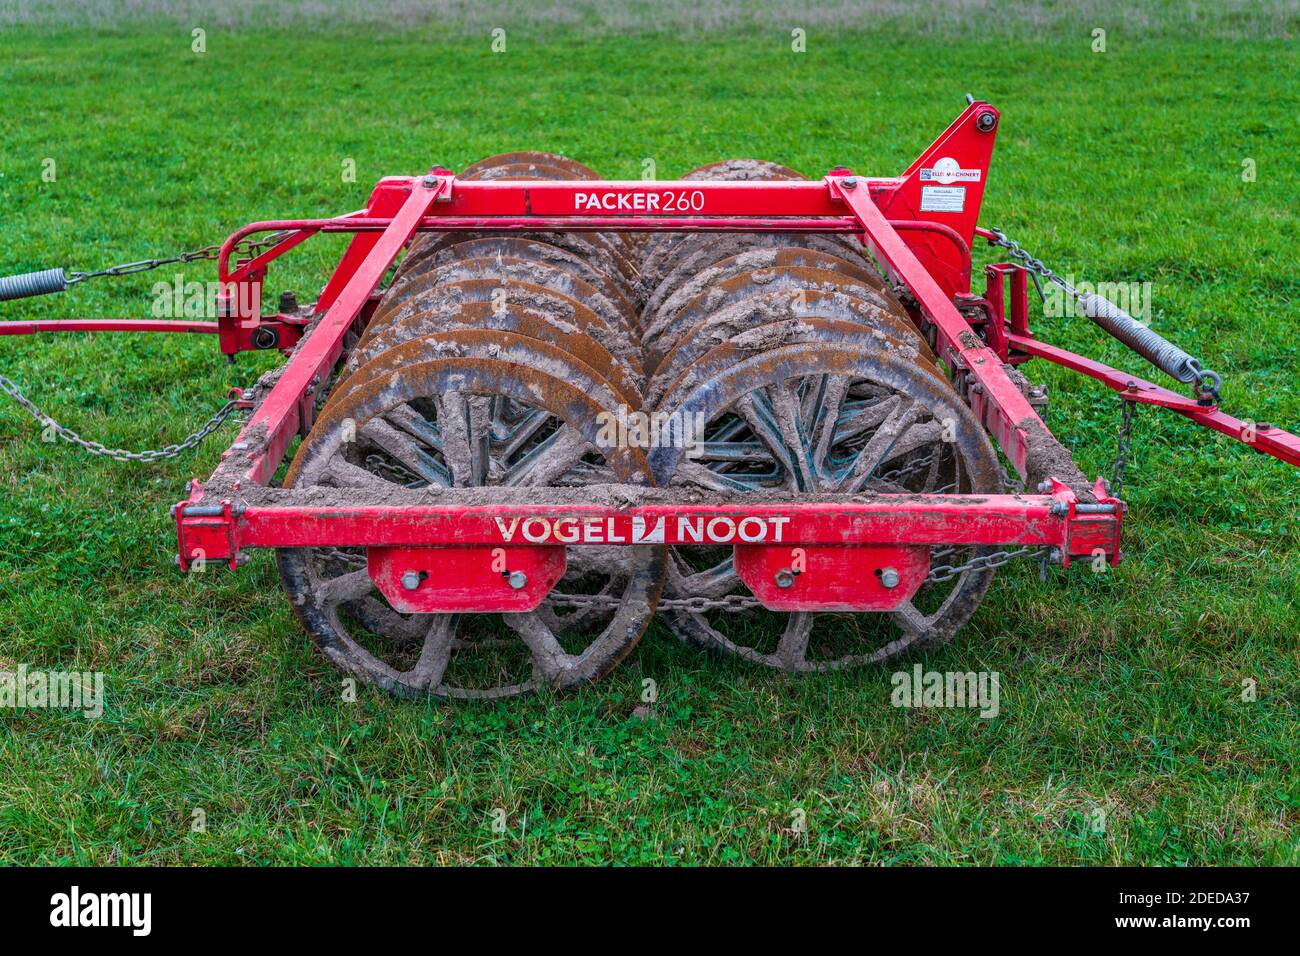 Vogel & Noot Packer 260 pre-semina di macchine per l'imballatore di terreno o di macchine agricole a rulli. Gli imballatori e i rulli del terreno sono usati per generare i seedbeds livellato dopo l'aratura. Foto Stock